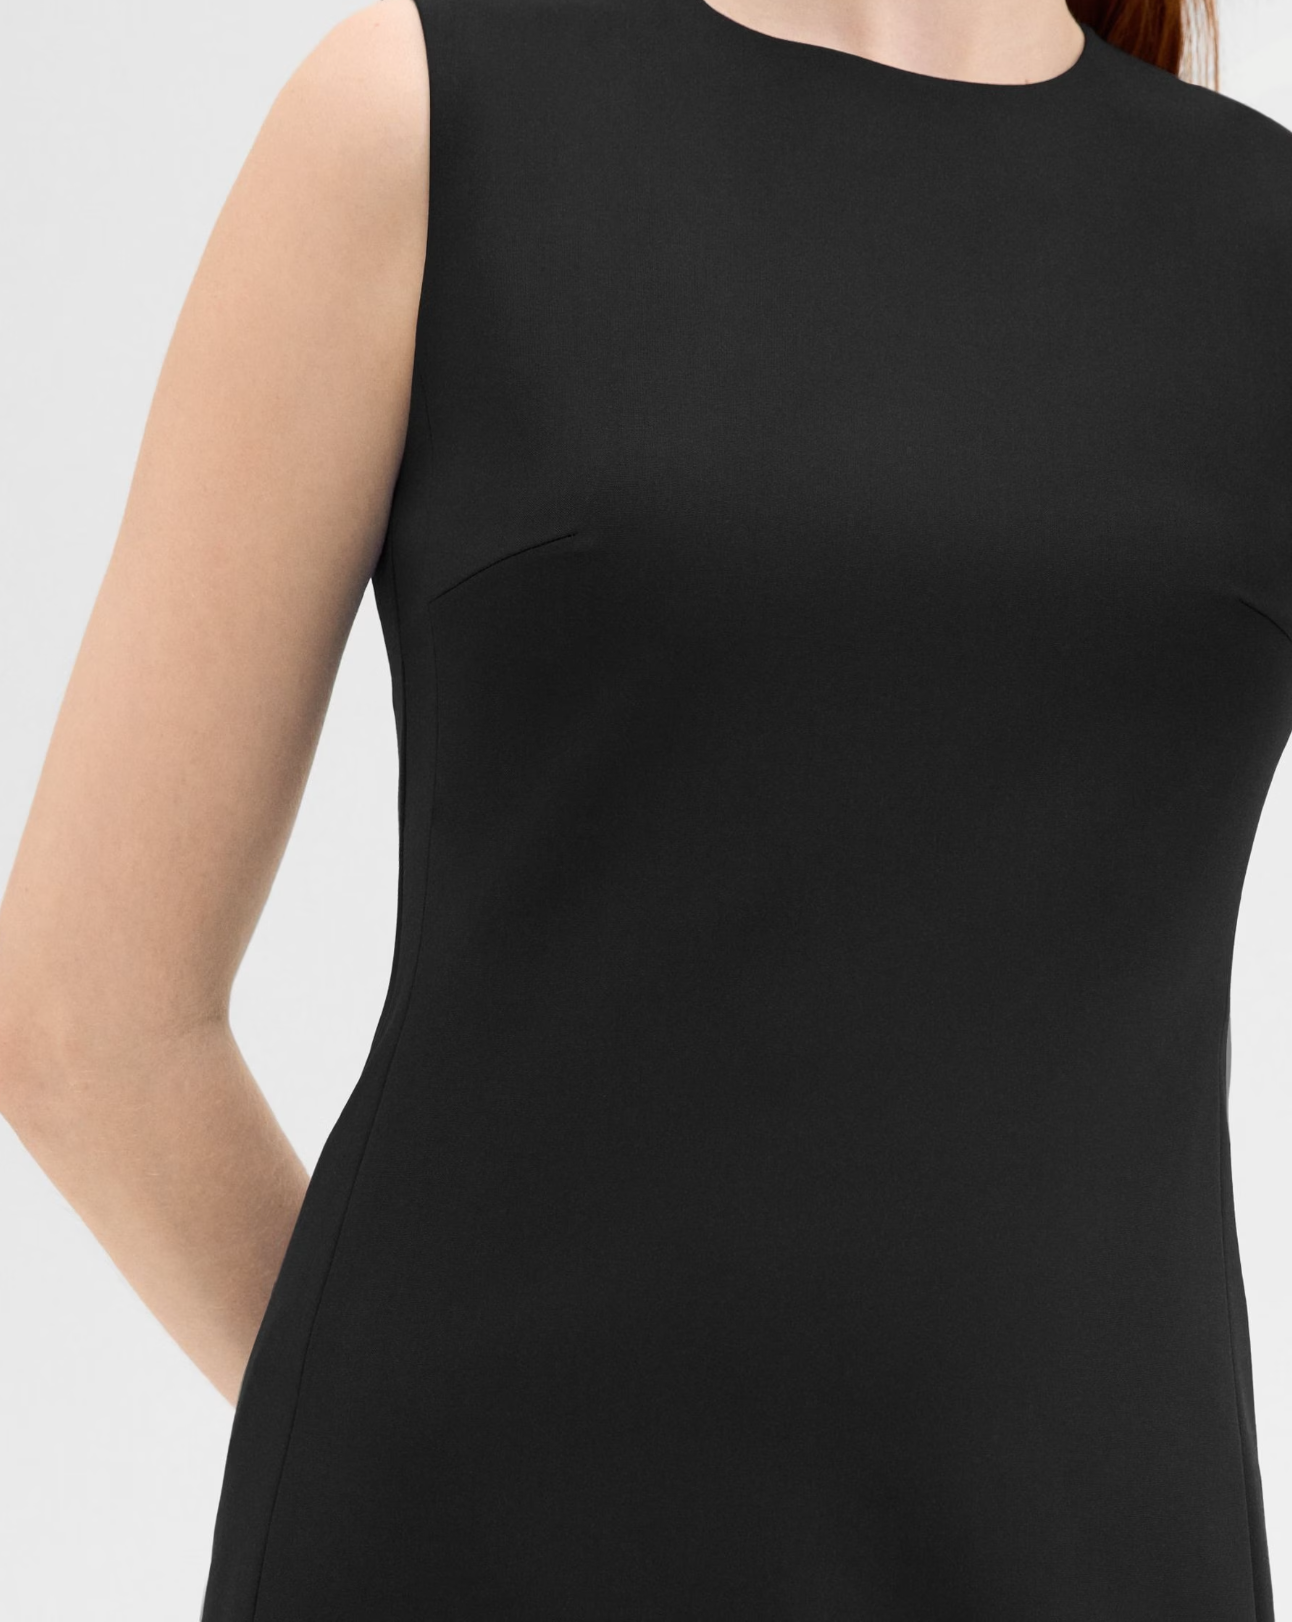 women's professional sheath dress in black